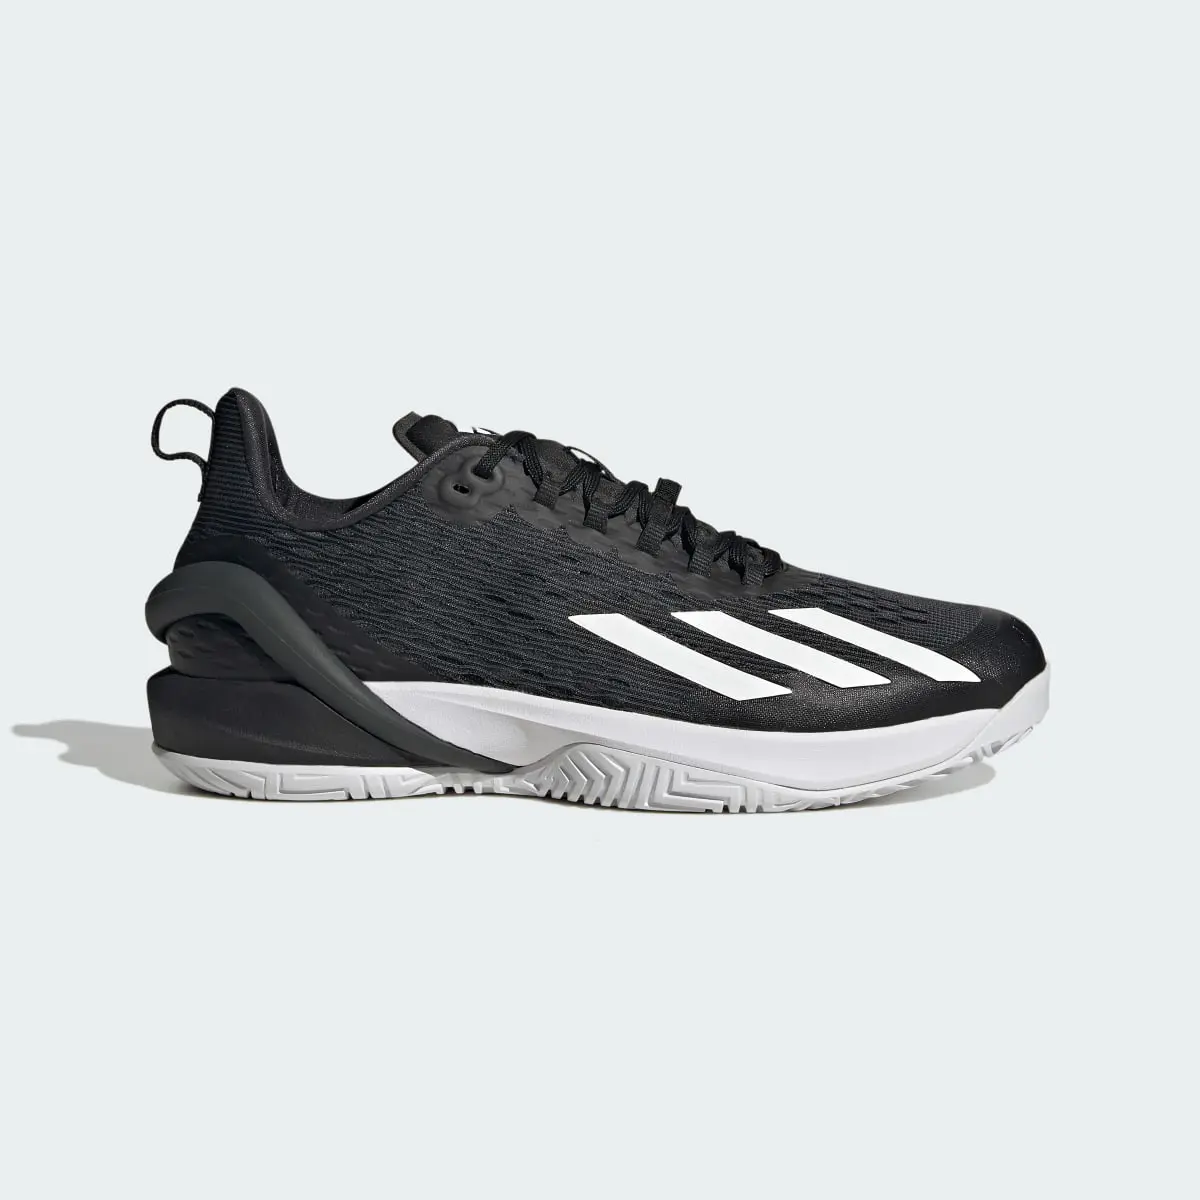 Adidas Adizero Cybersonic Tennis Shoes. 2